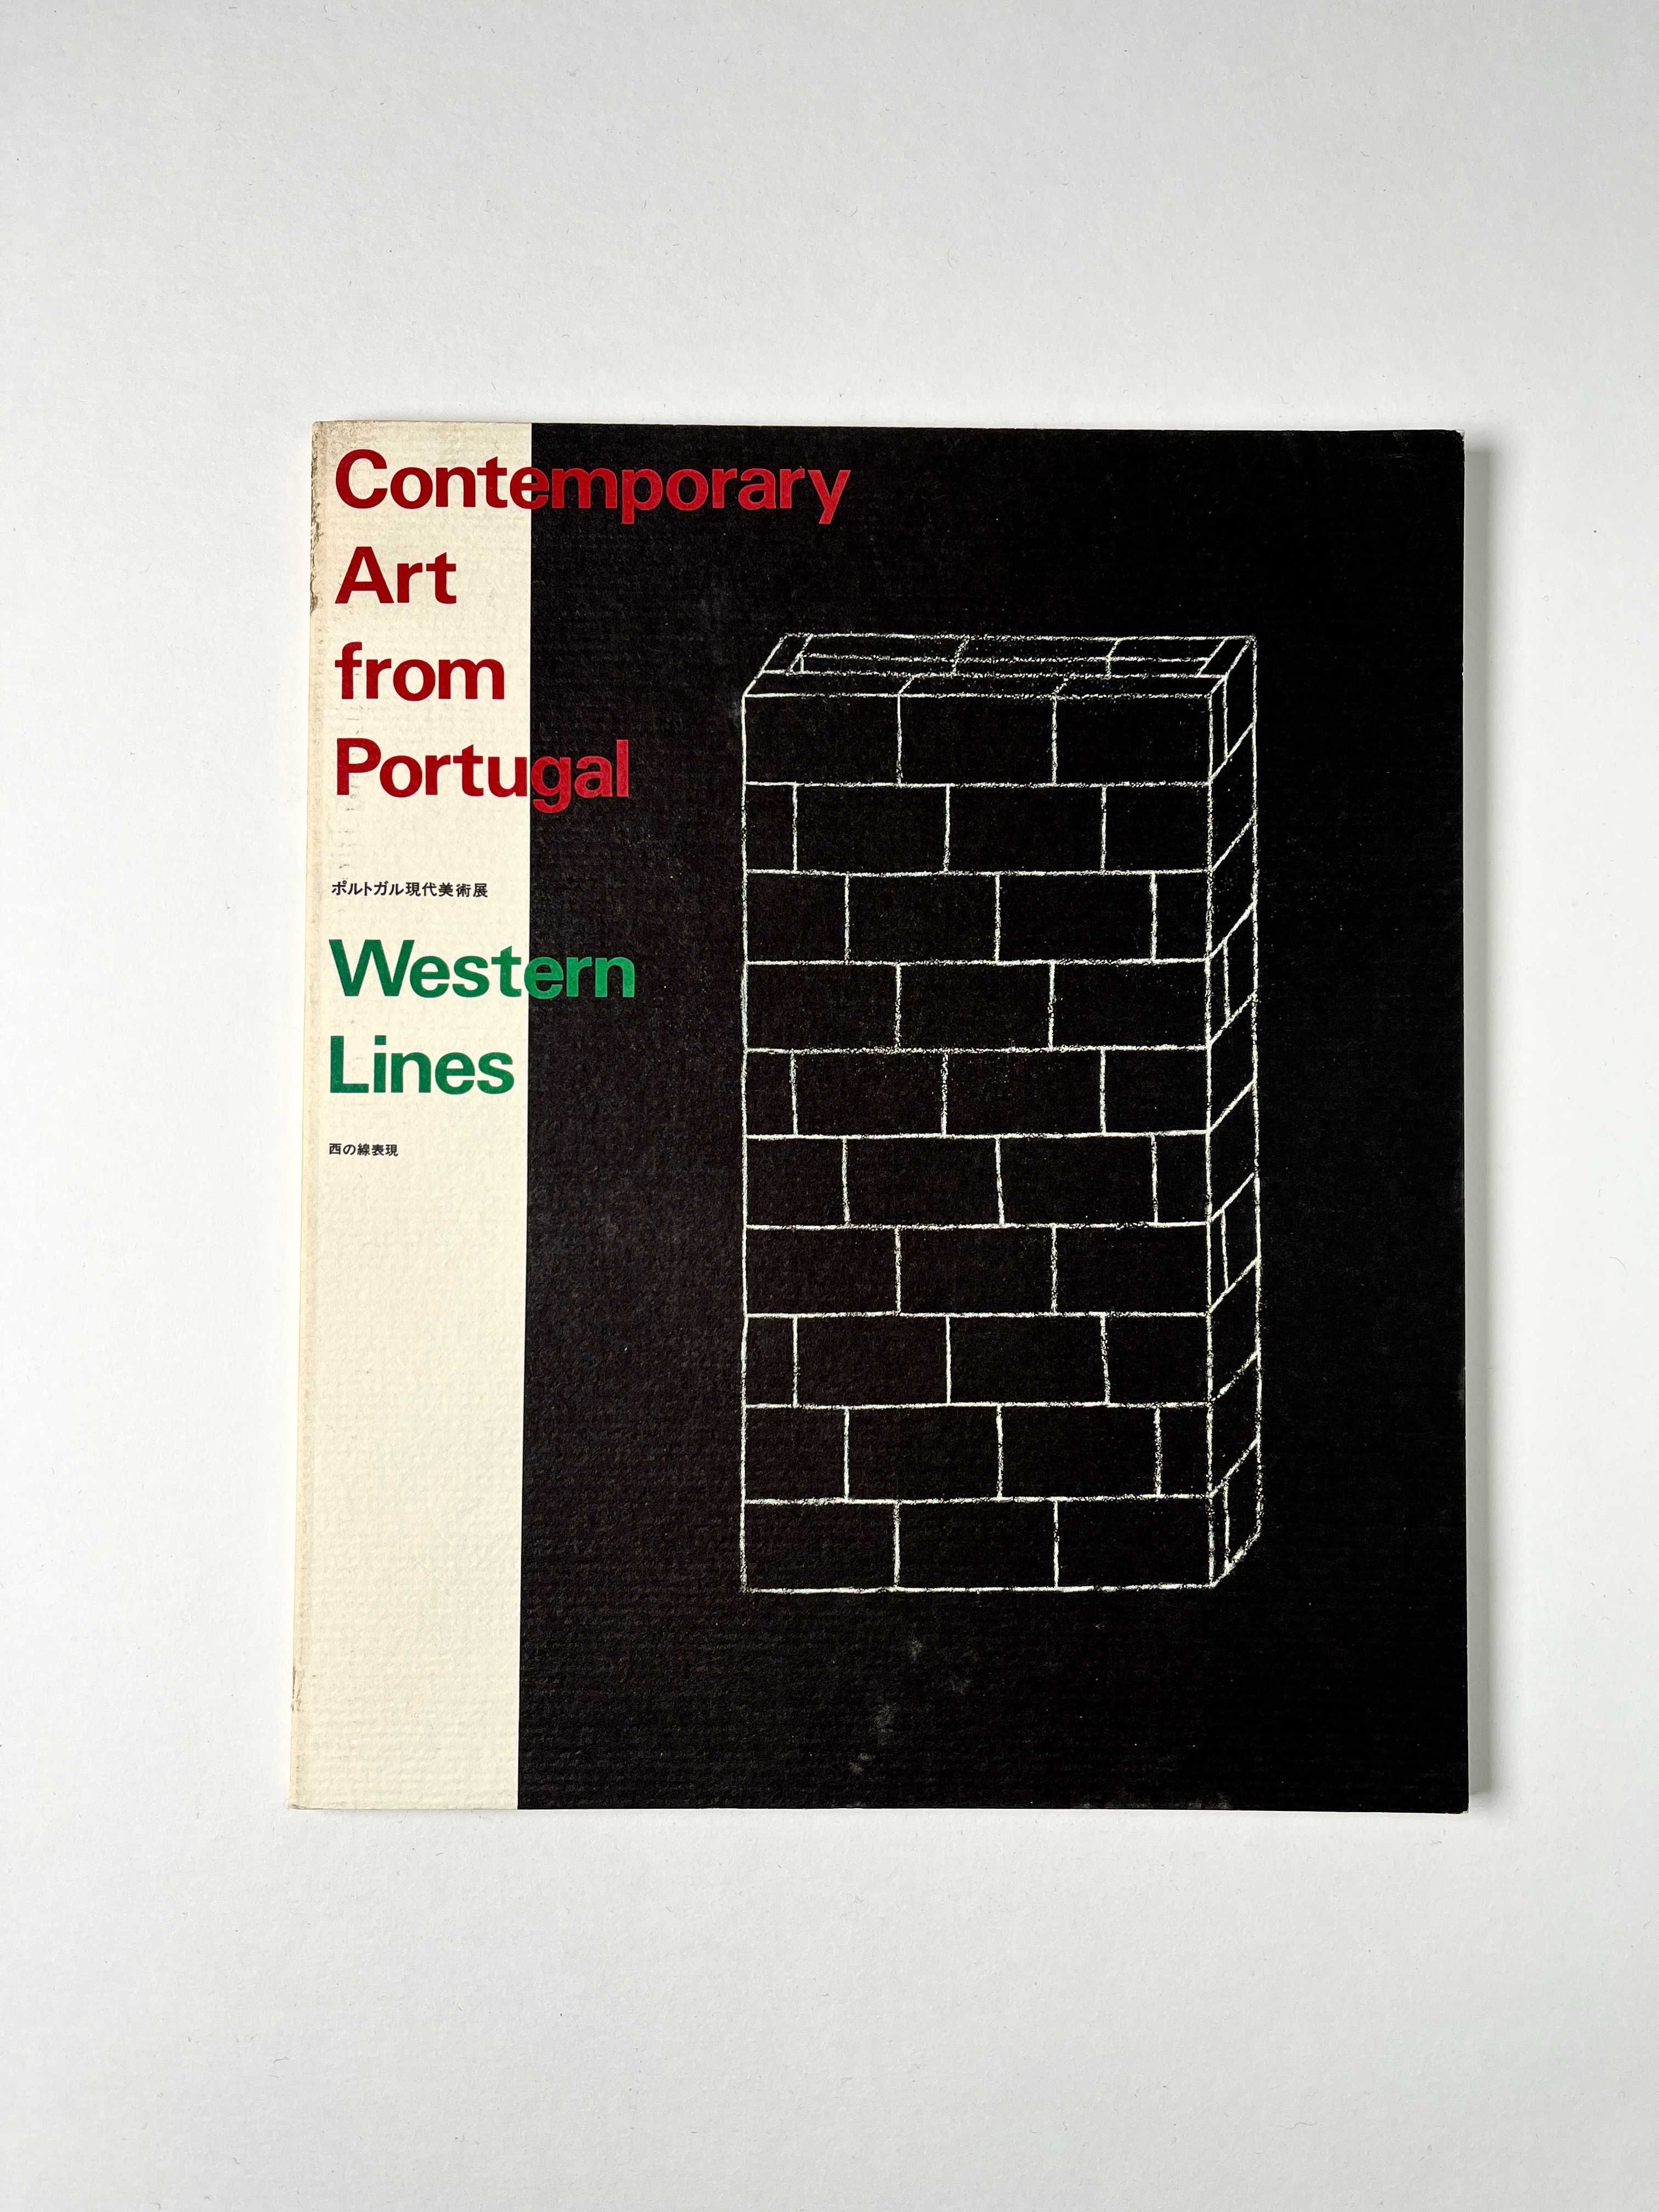 Artistas Vários Contemporary Art from Portugal - Western Lines 1993